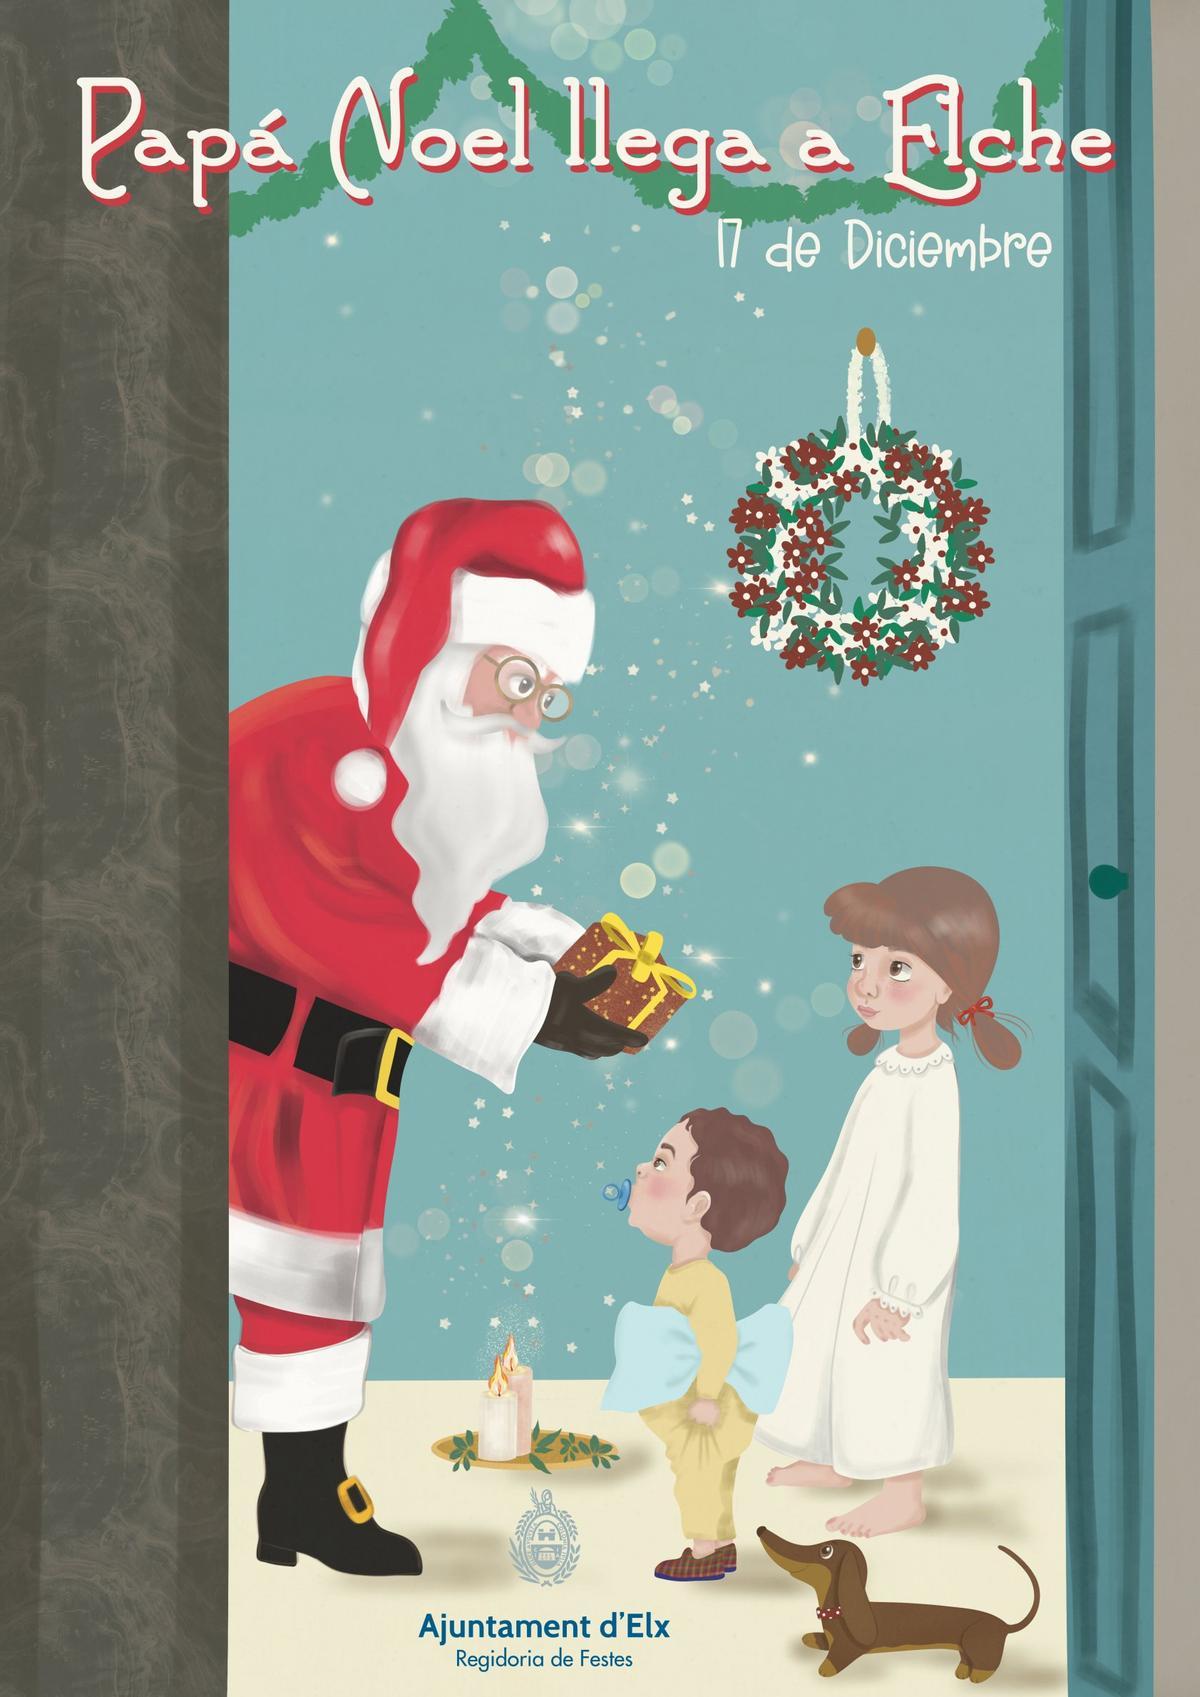 Cartel de la llegada de Papá Noel a Elche.